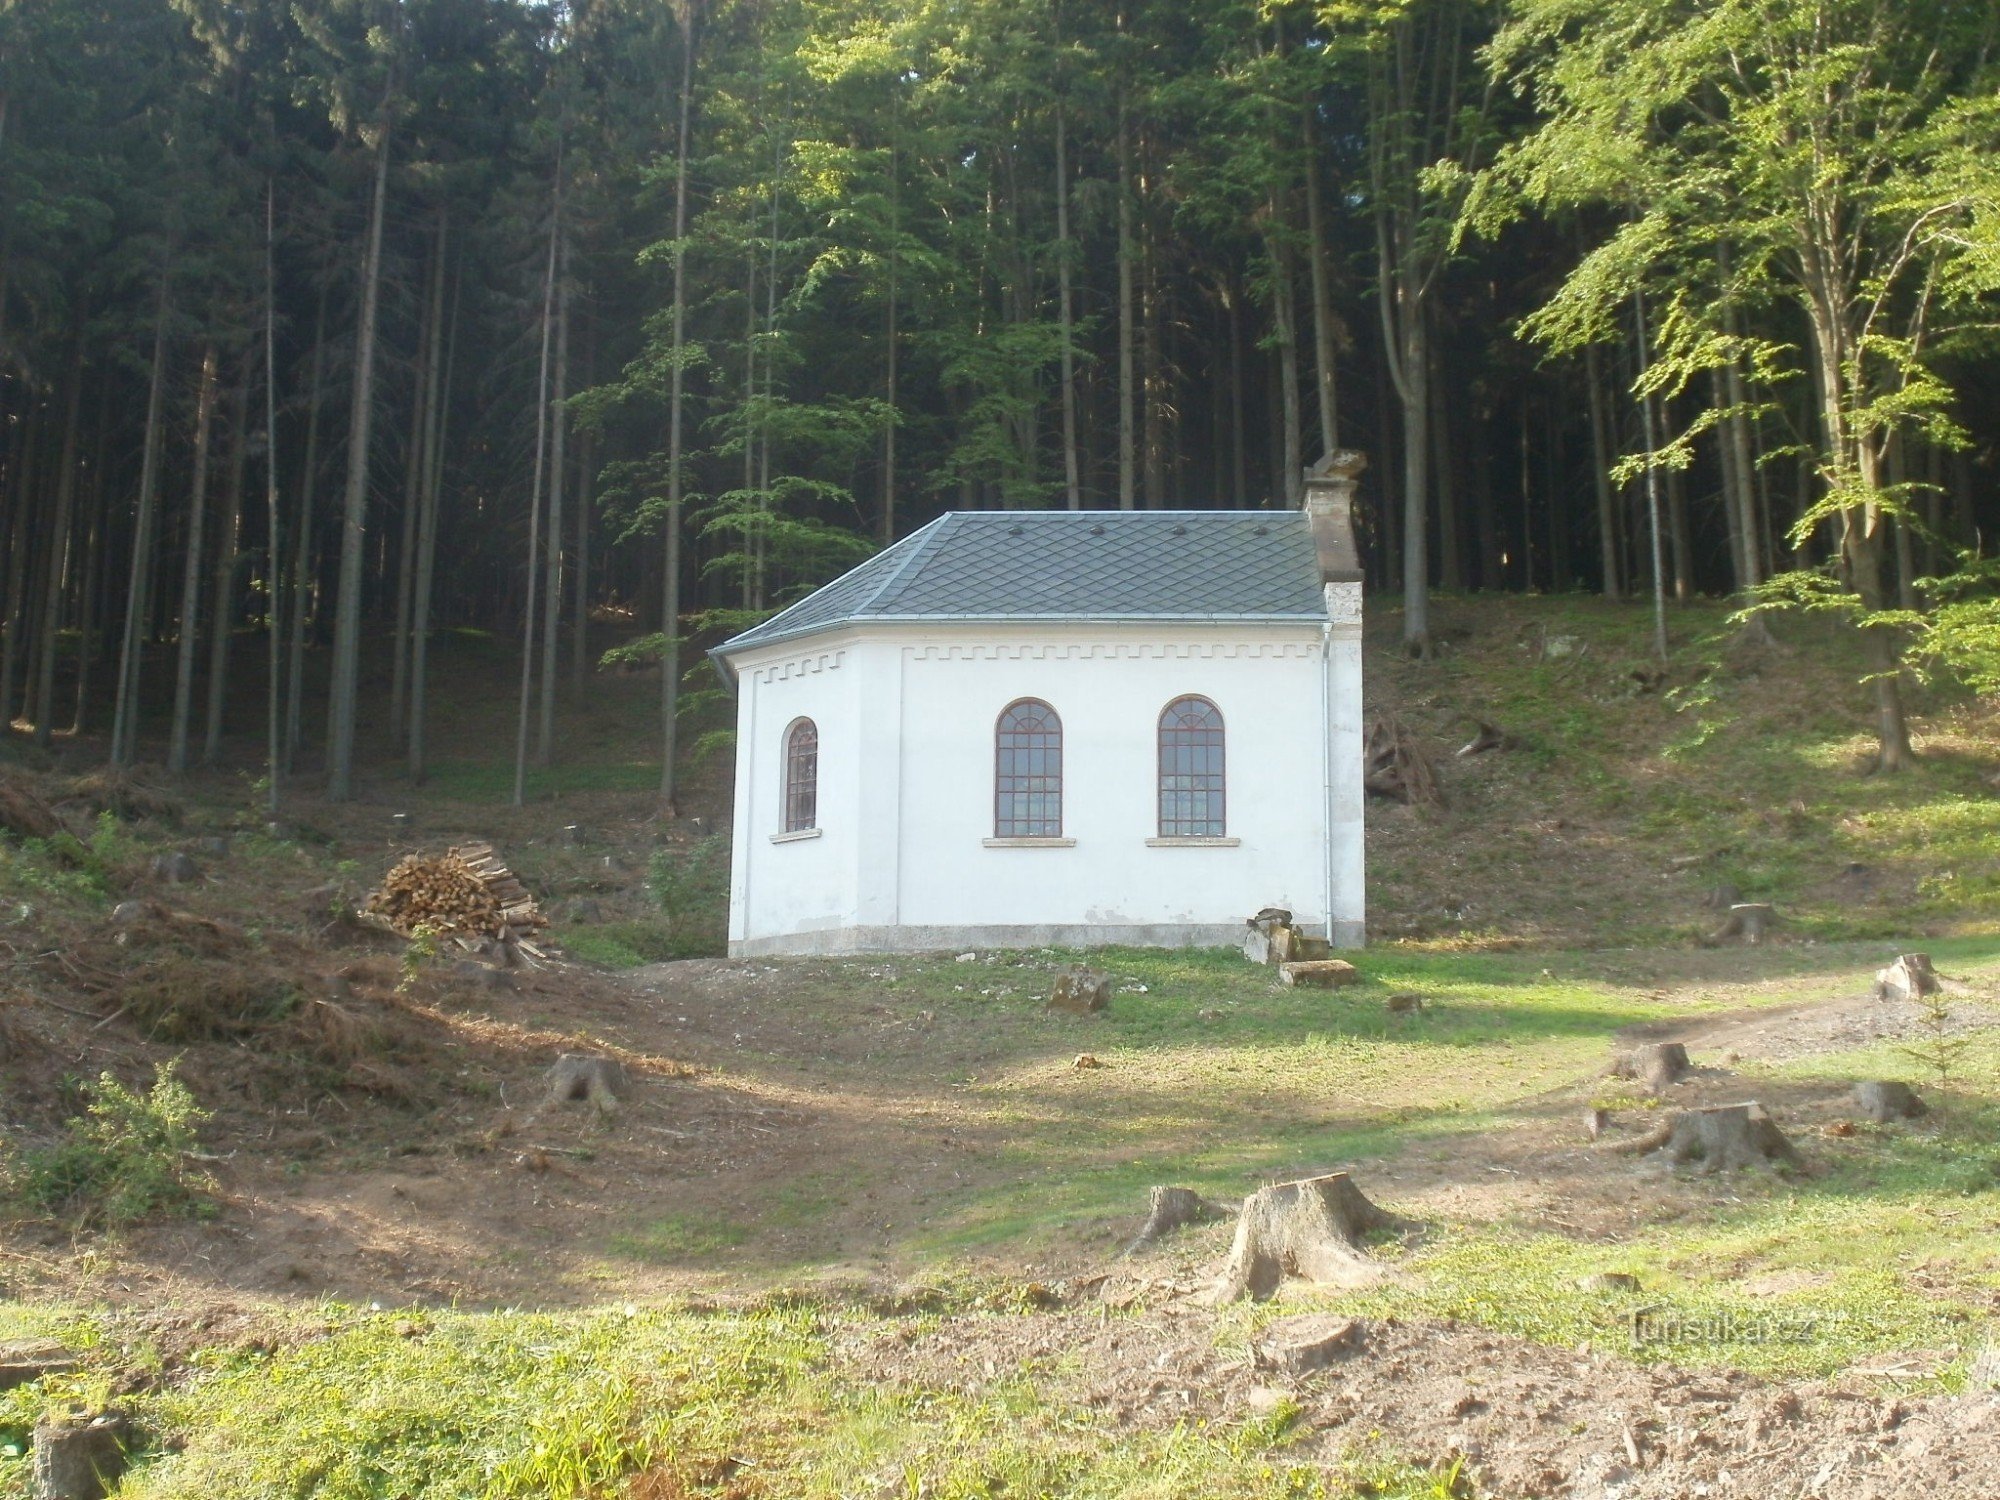 Kaple Panny Marie u Lázní pod Zvičinou